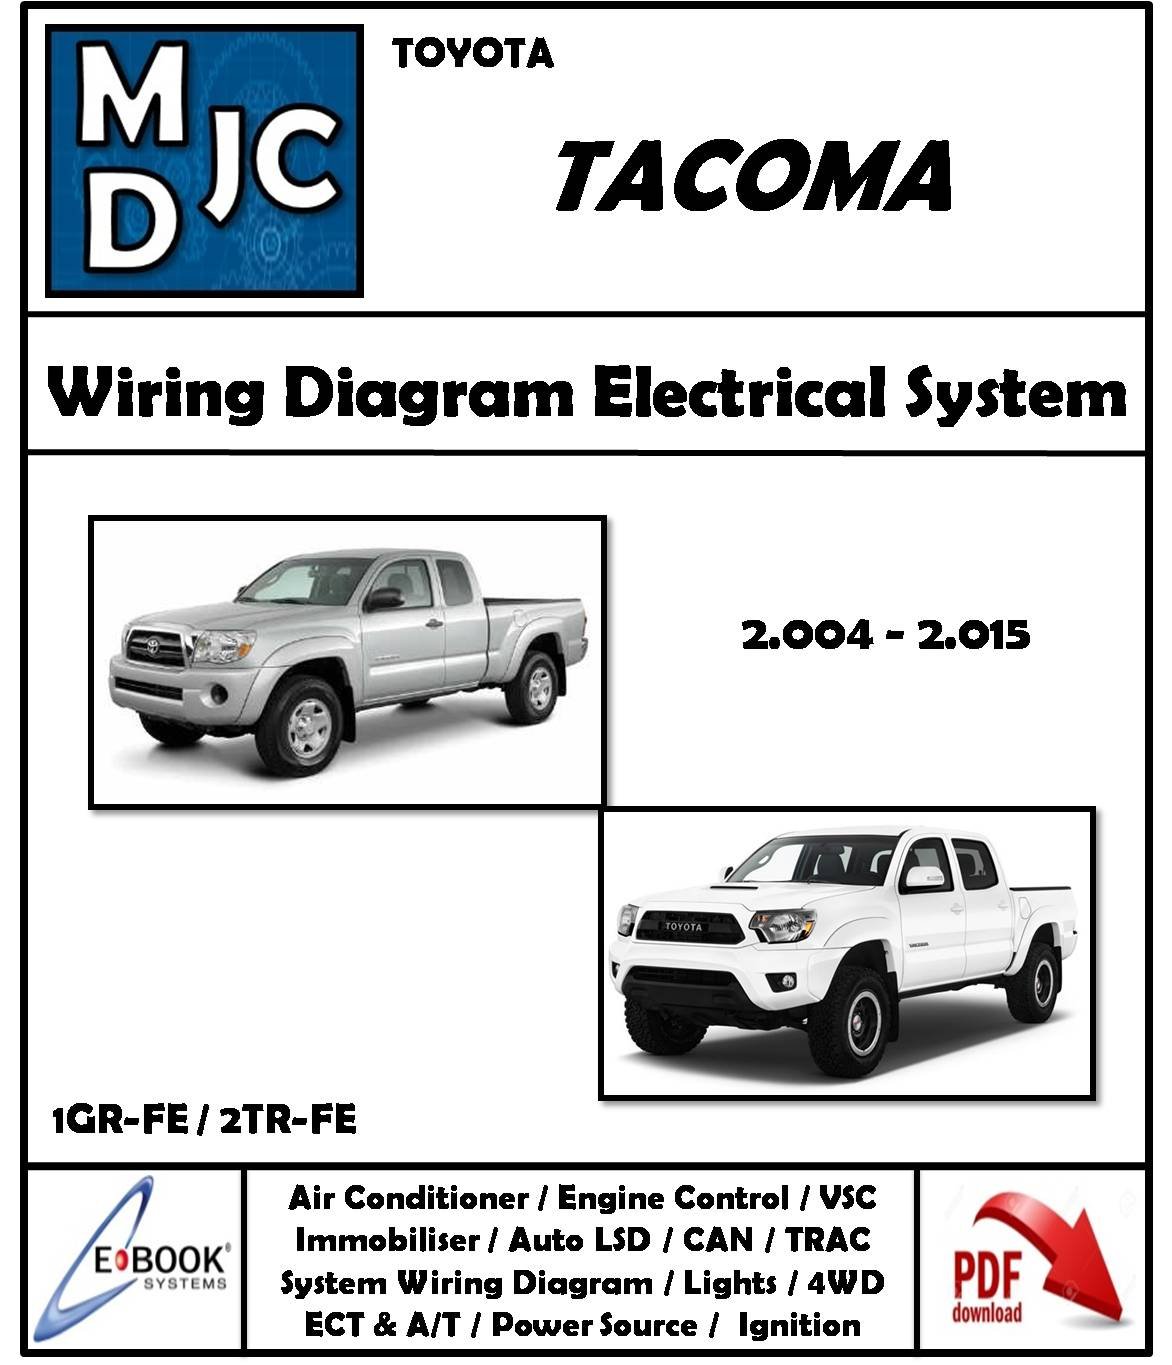 Toyota Tacoma 2004 - 2015